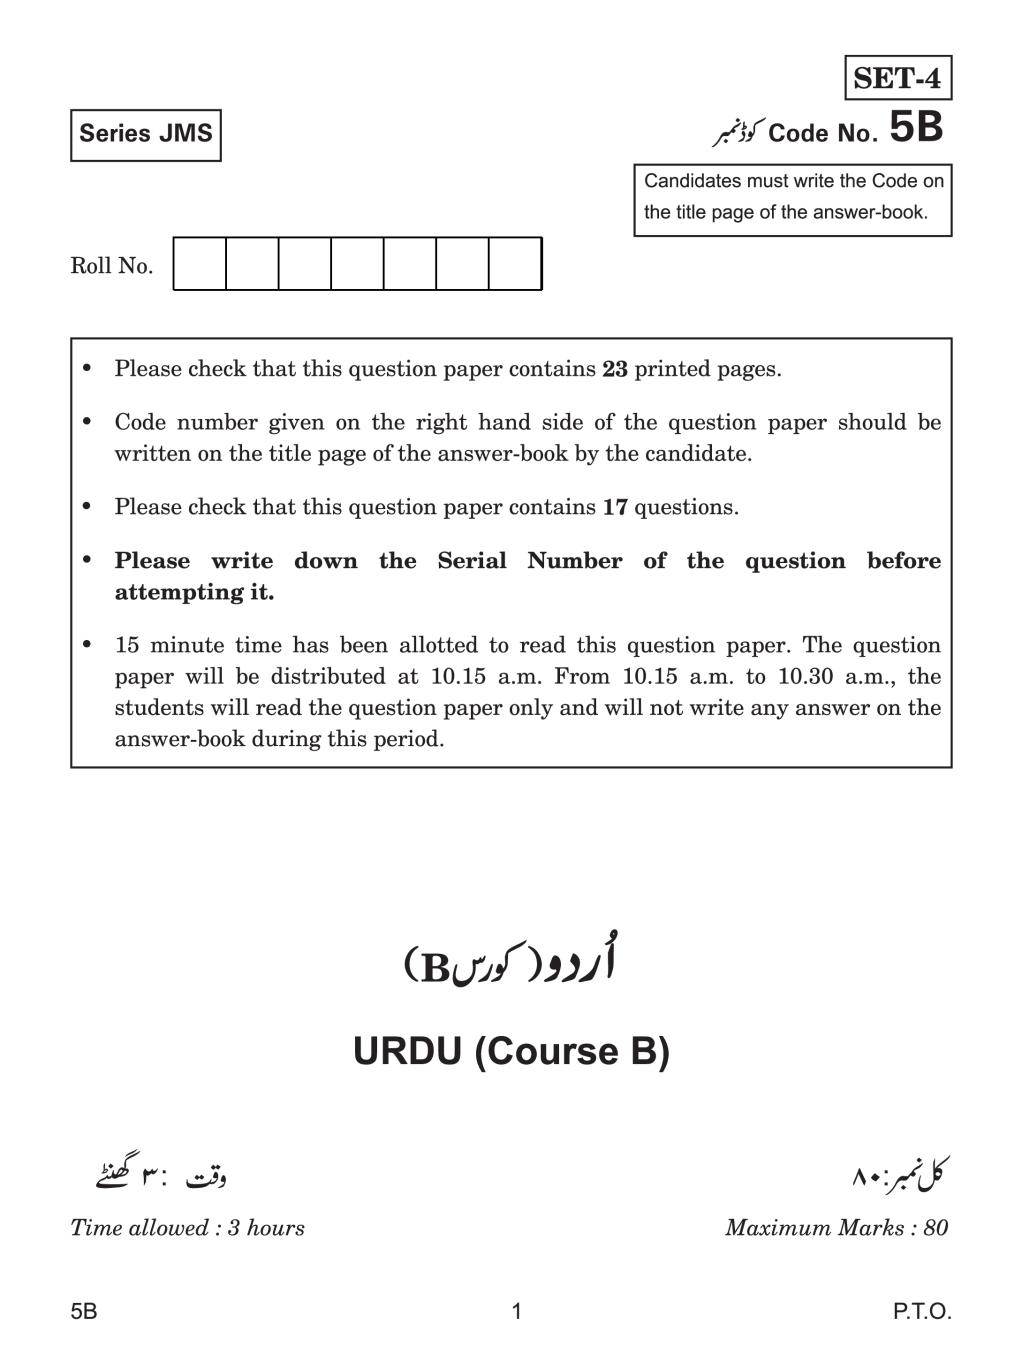 CBSE Class 10 Urdu Course B Question Paper 2019 - Page 1